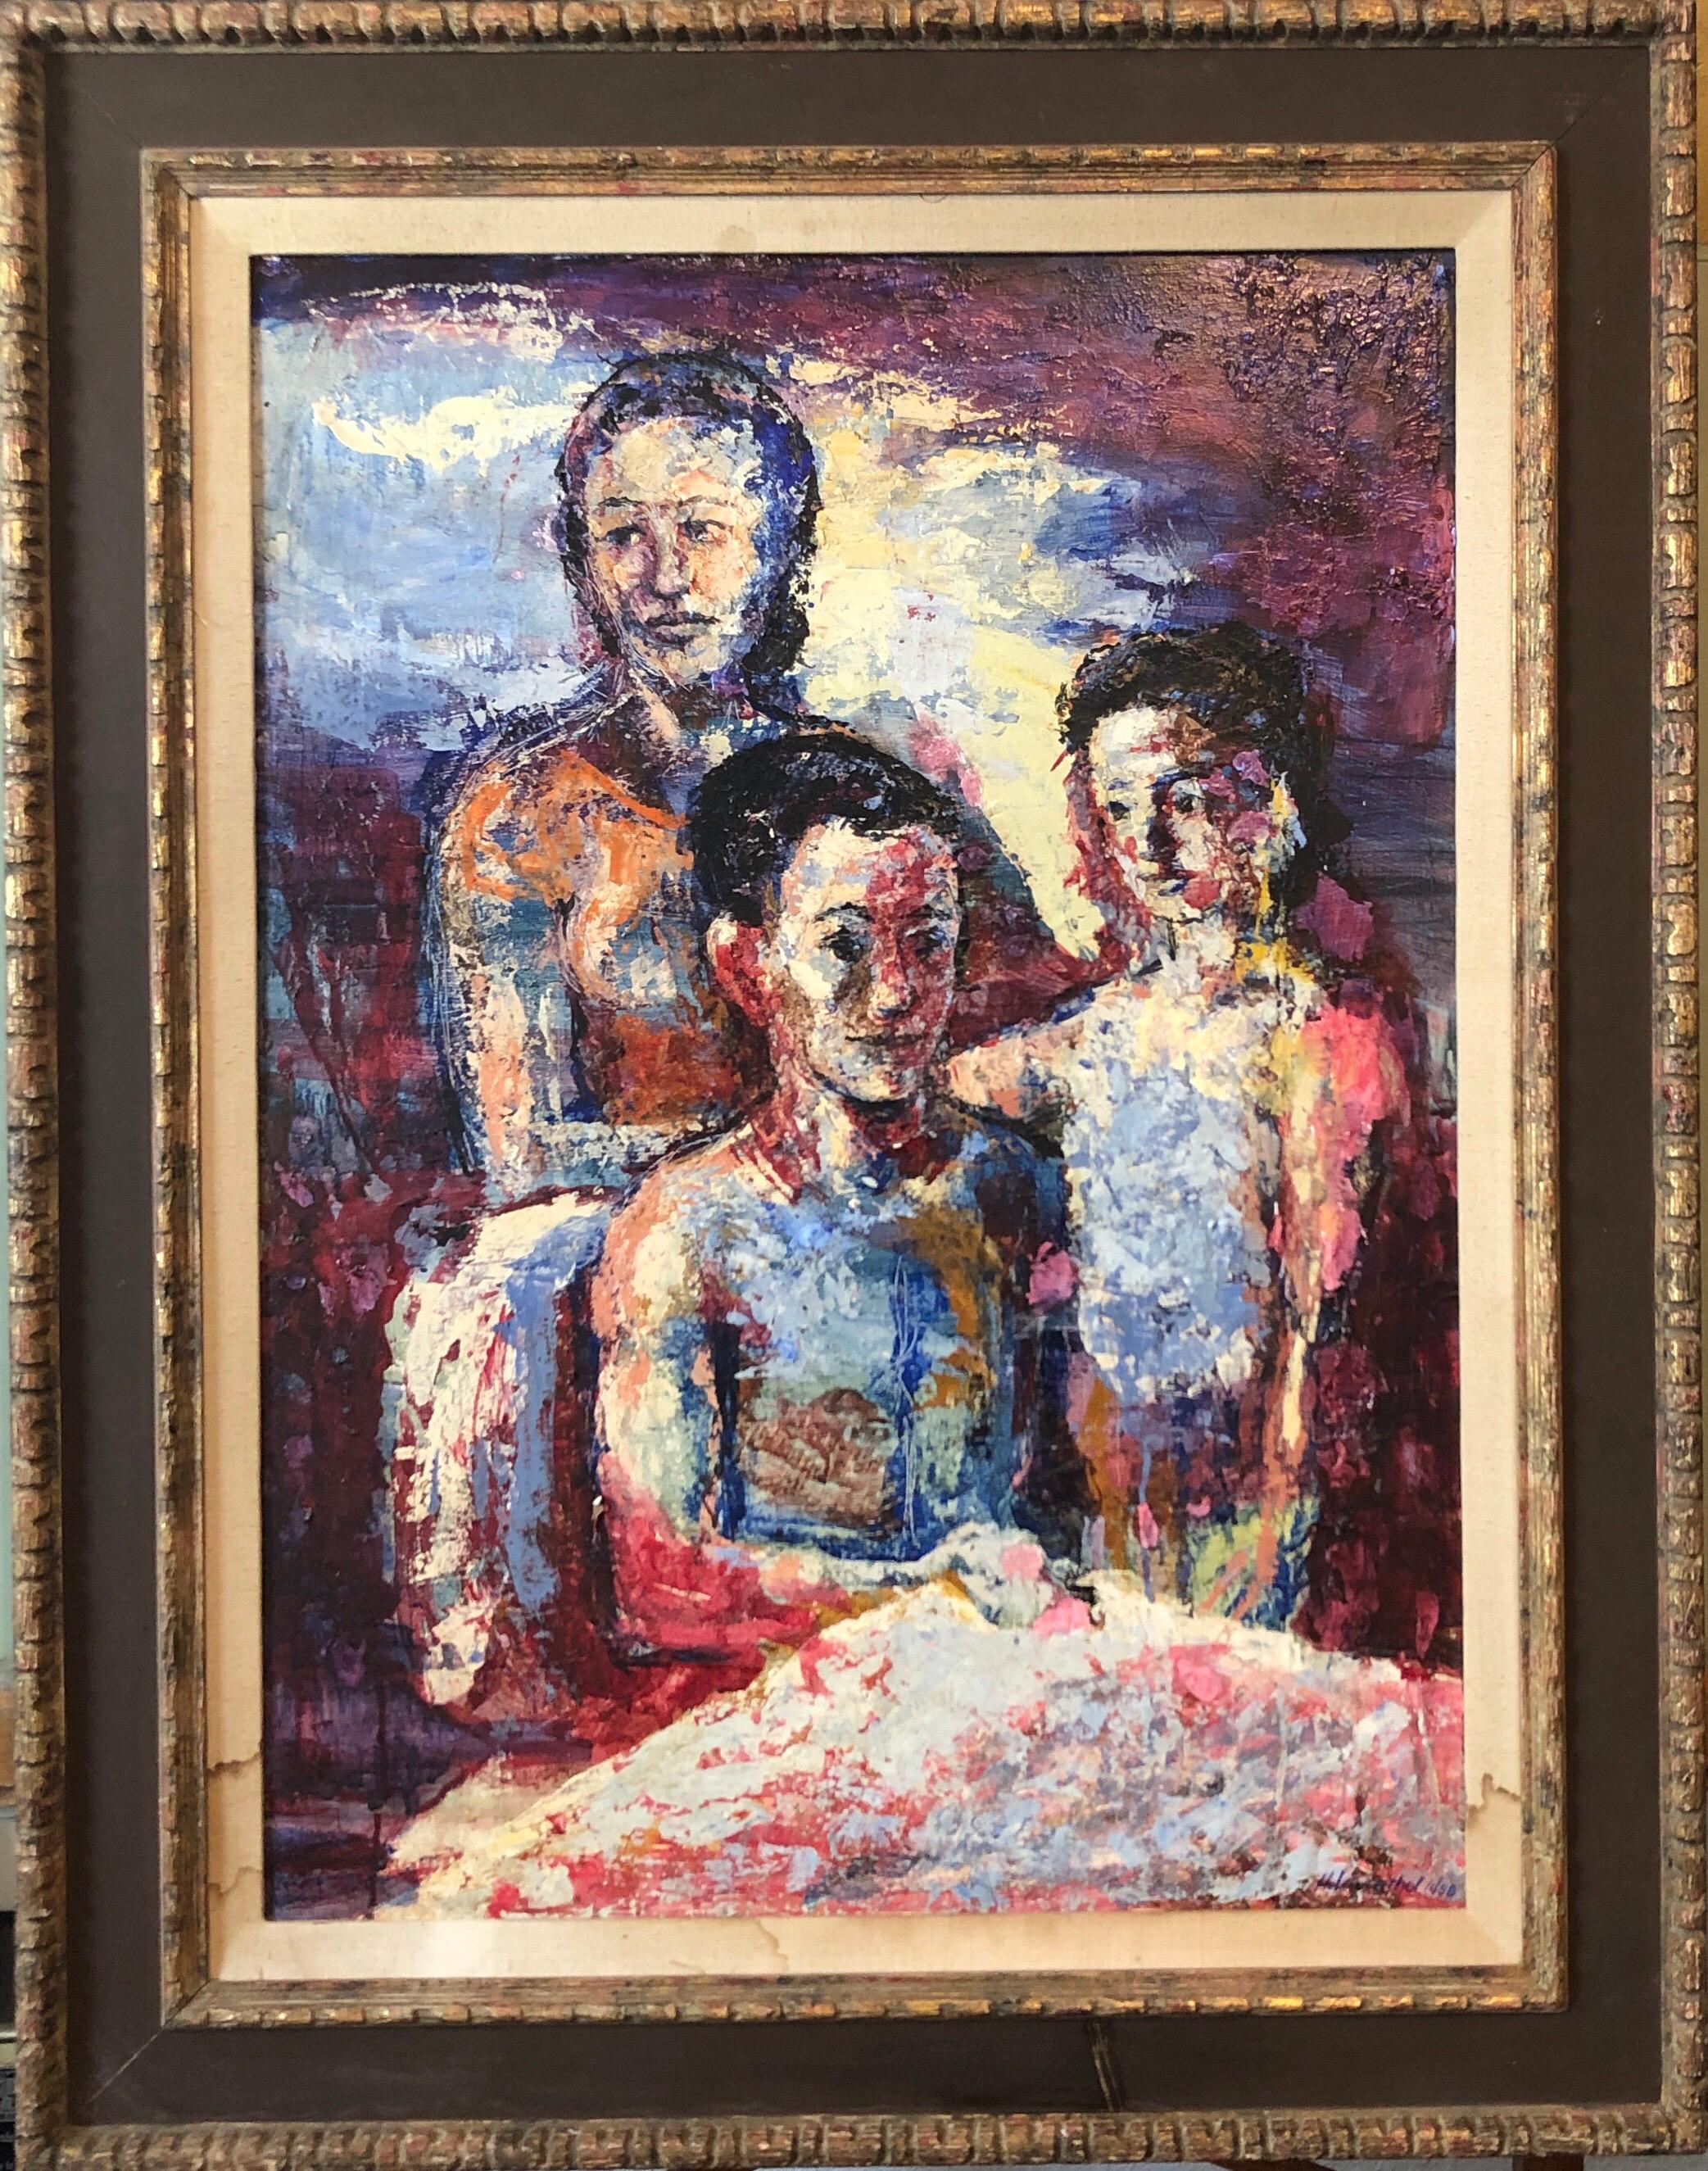 Portrait Painting Hank Laventhol - Portrait de famille surréaliste, grande peinture à l'huile surréaliste Mère, enfants, néo-surréalisme